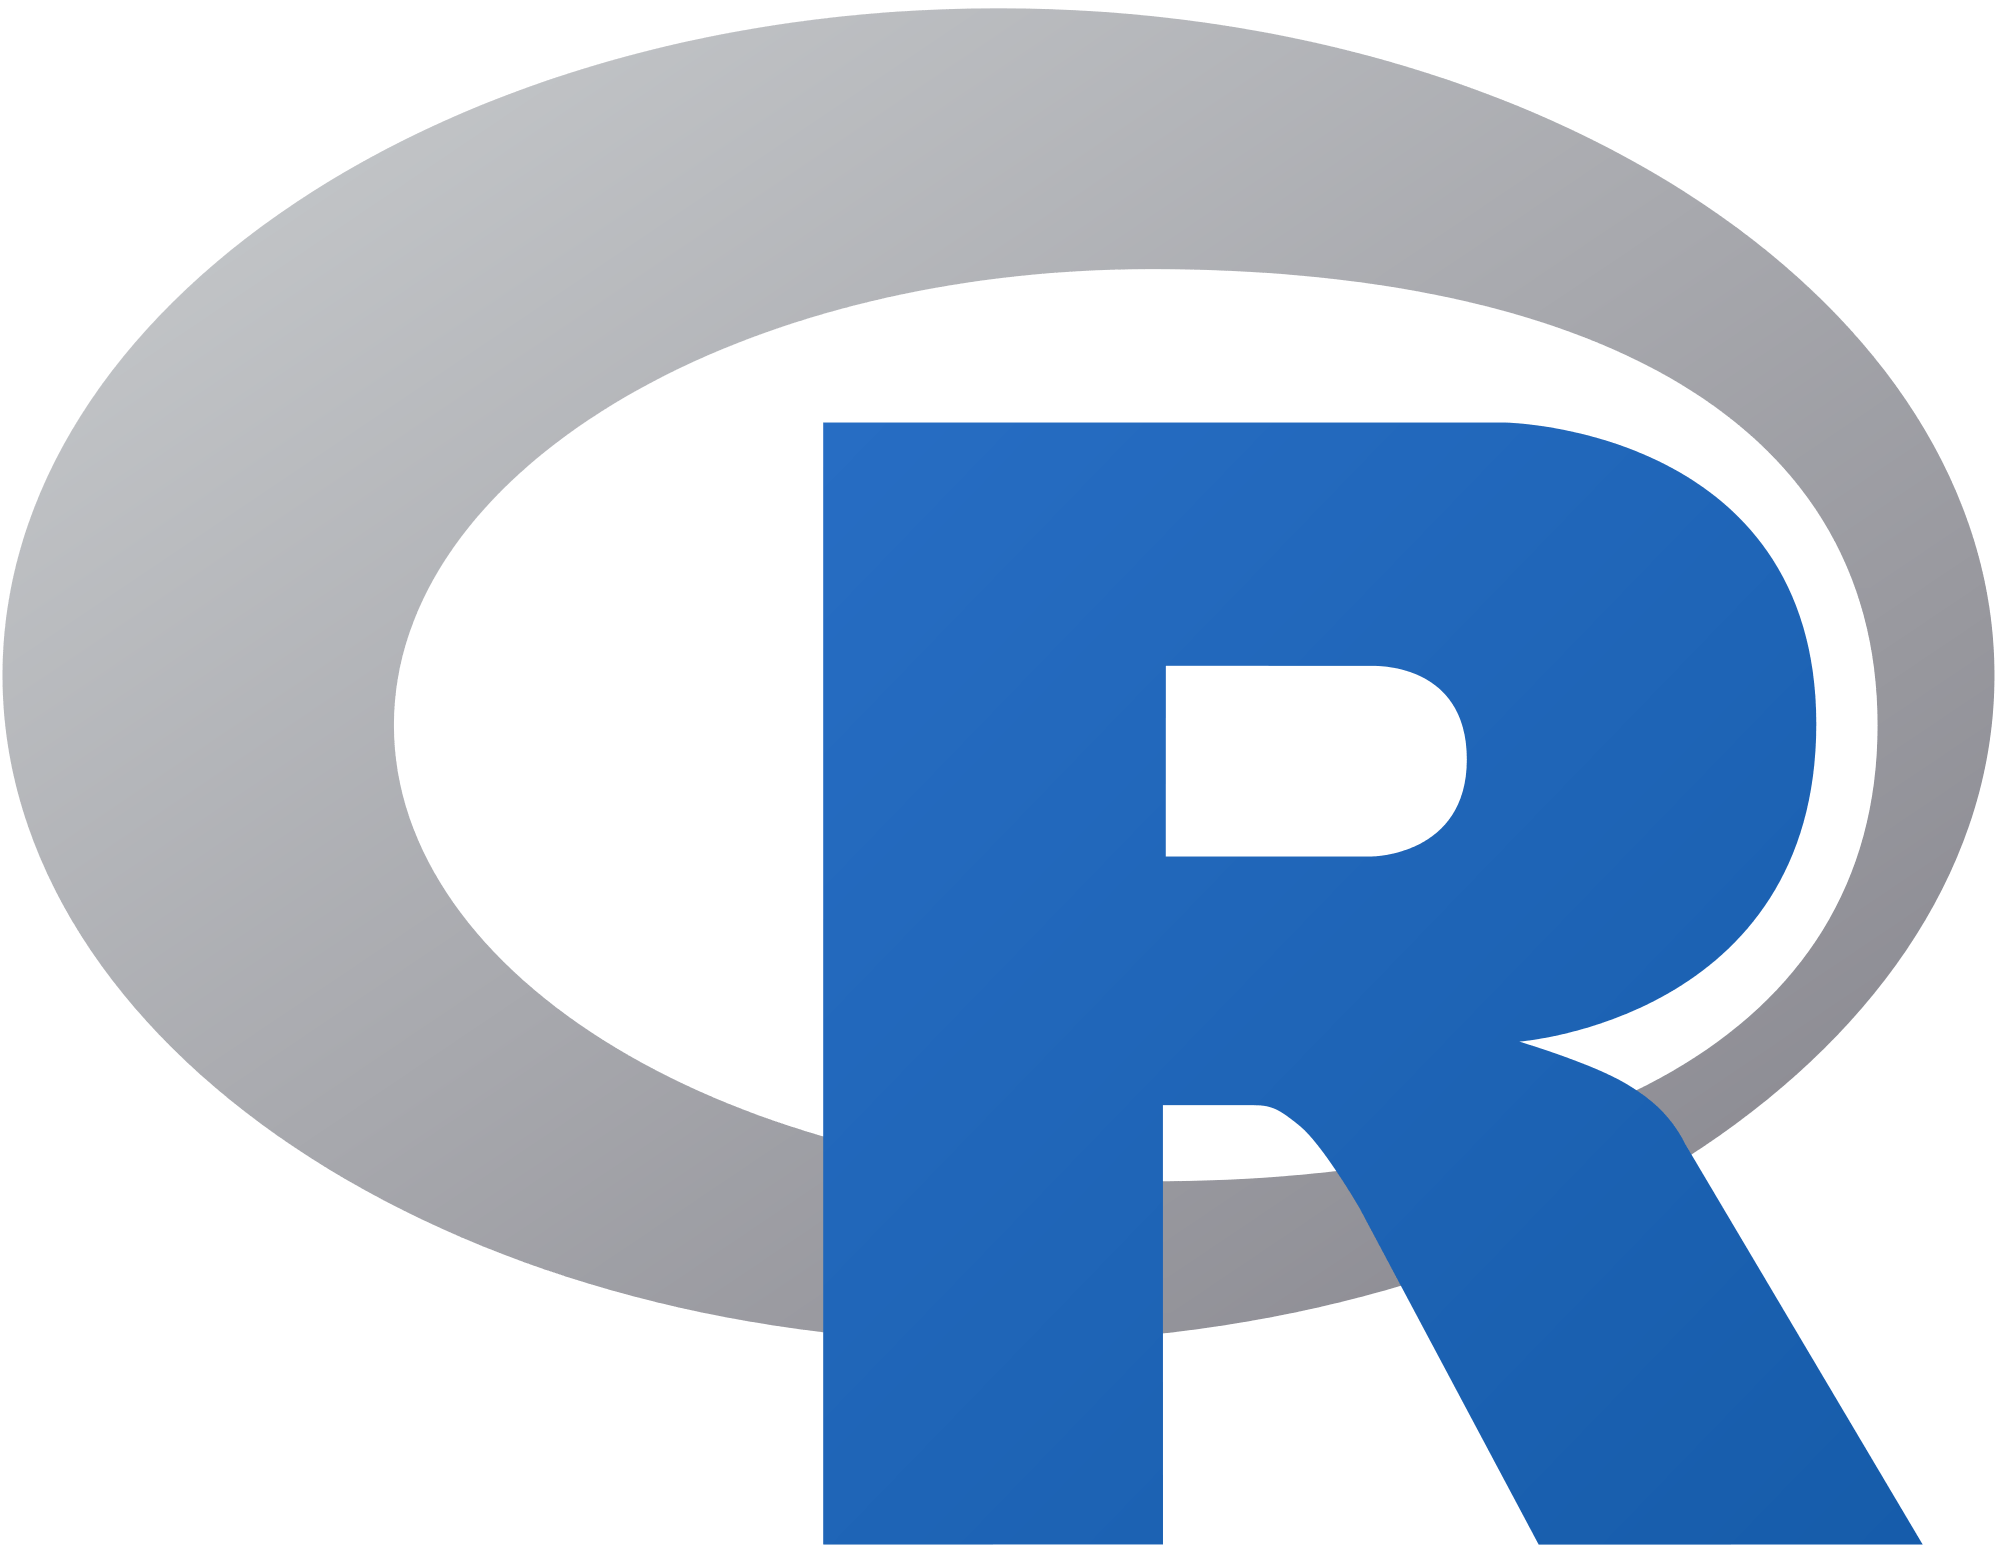 Red F Software Program Logo - R (programming language)